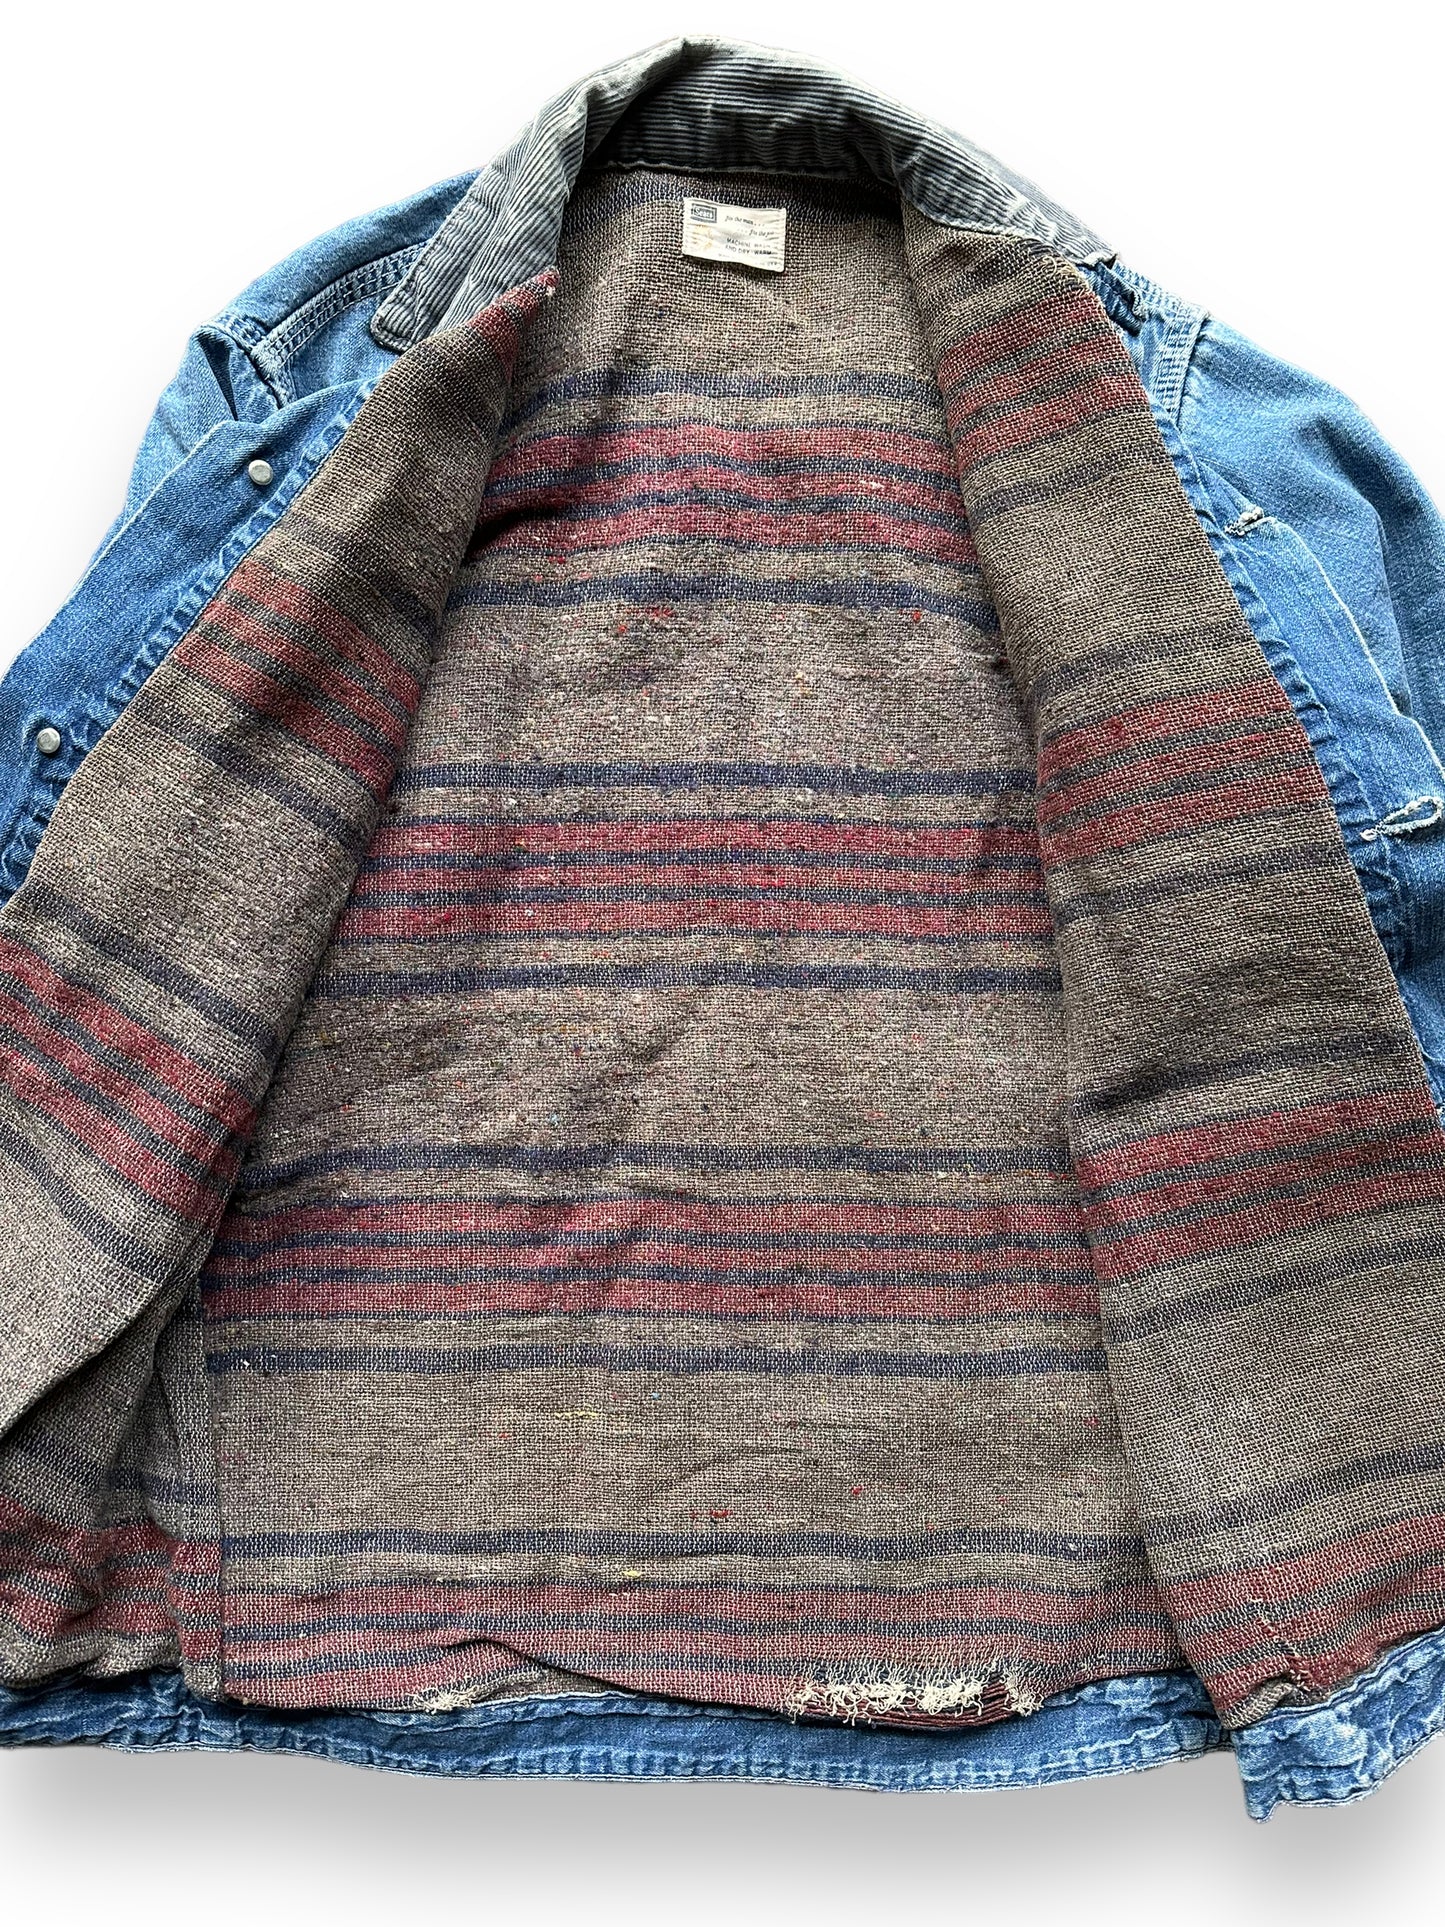 Liner Detail on Vintage Sears Blanket Lined Denim Chore Coat SZ L | Vintage Denim Chore Coat | Barn Owl Vintage Seattle